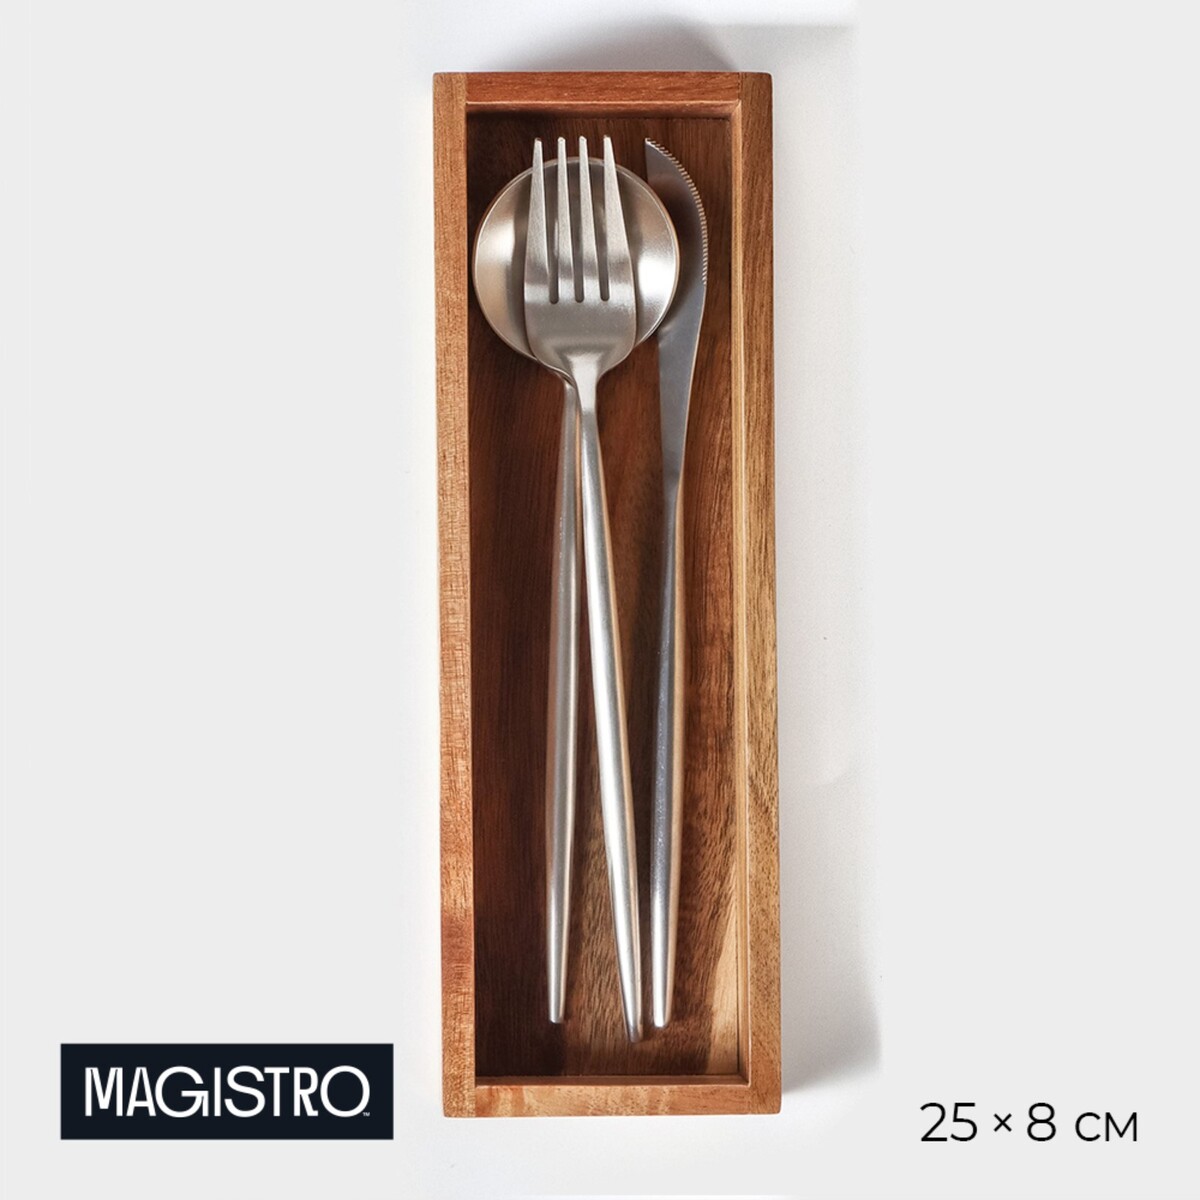 Подставка для столовых приборов magistro tropical 25×8×4 см, акация подставки для ножей и столовых приборов magistro